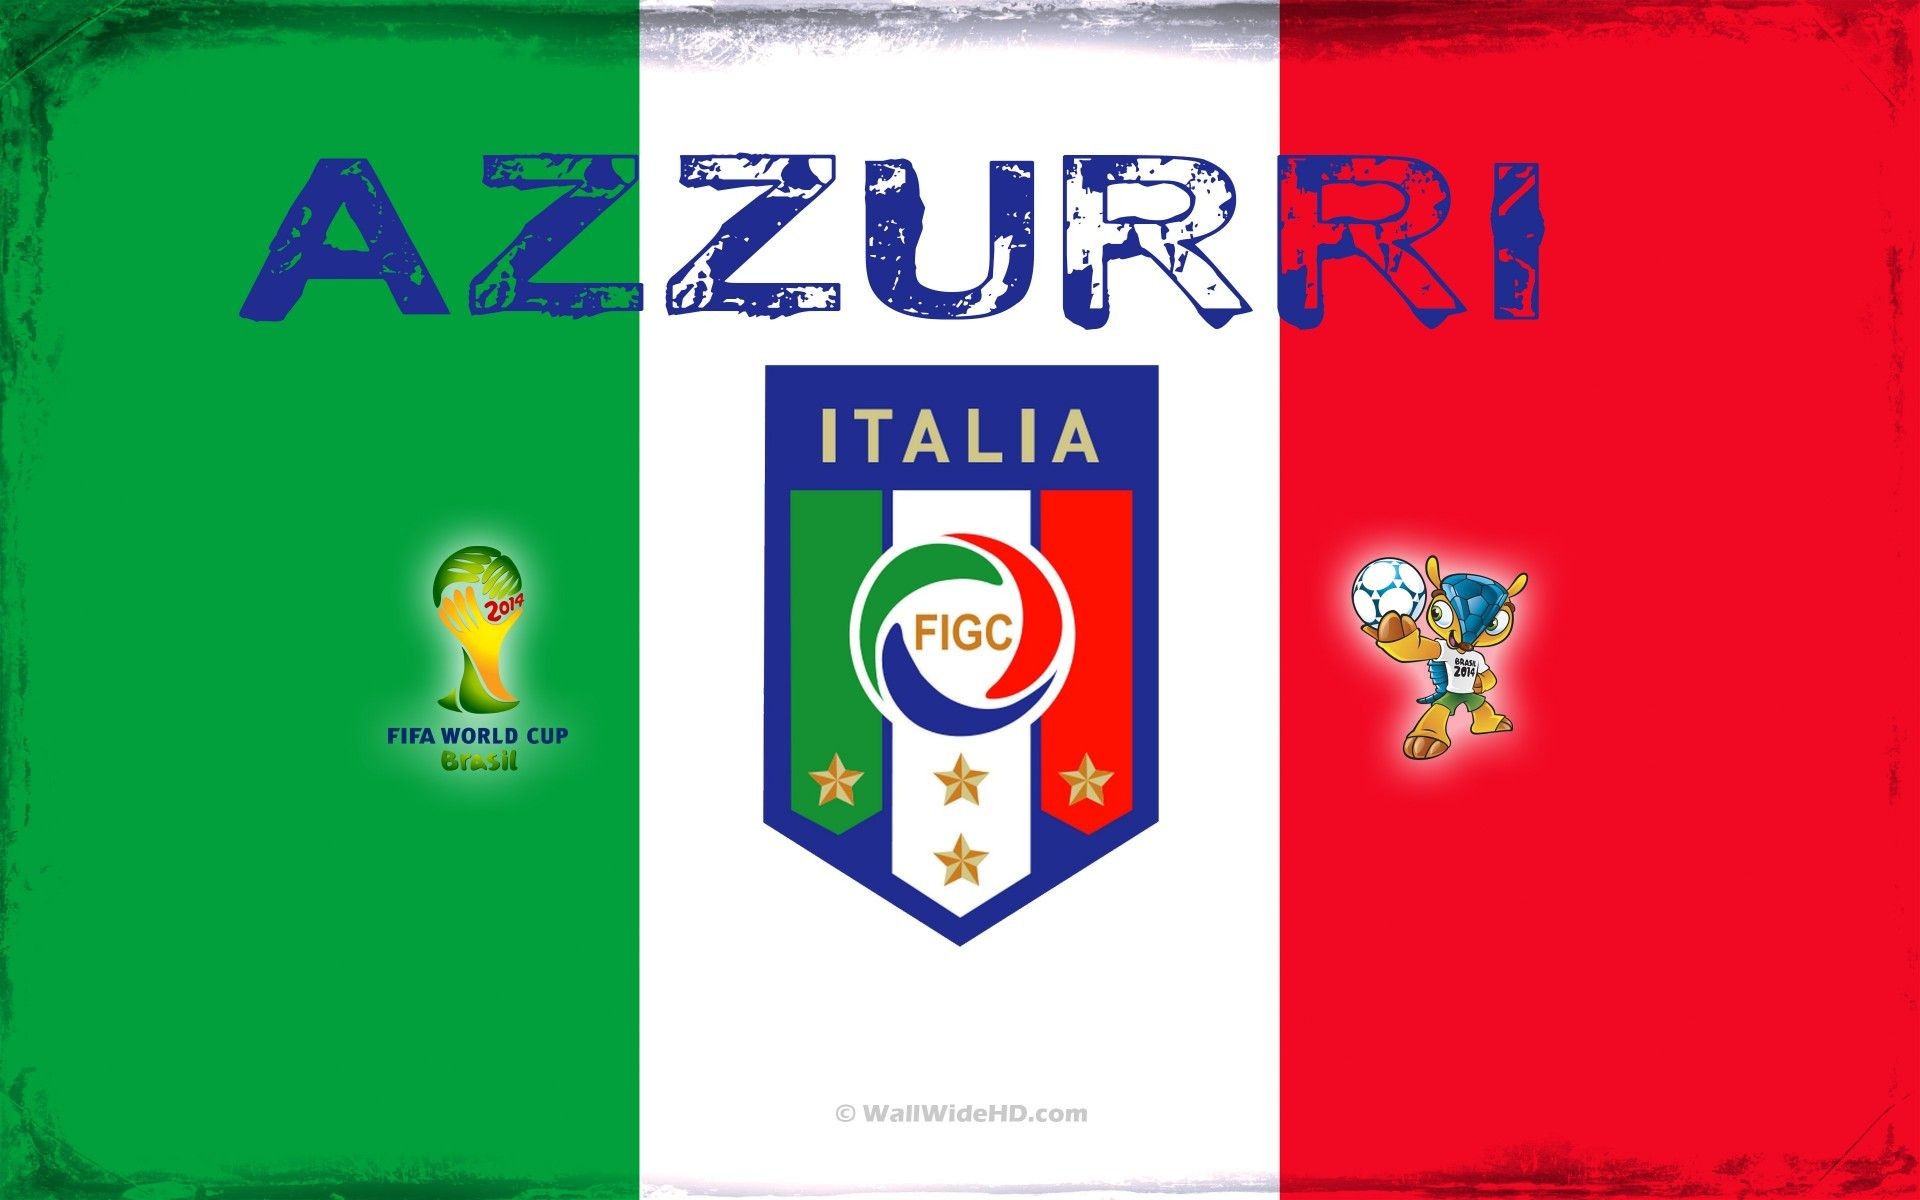 壁纸秀:意大利国家队